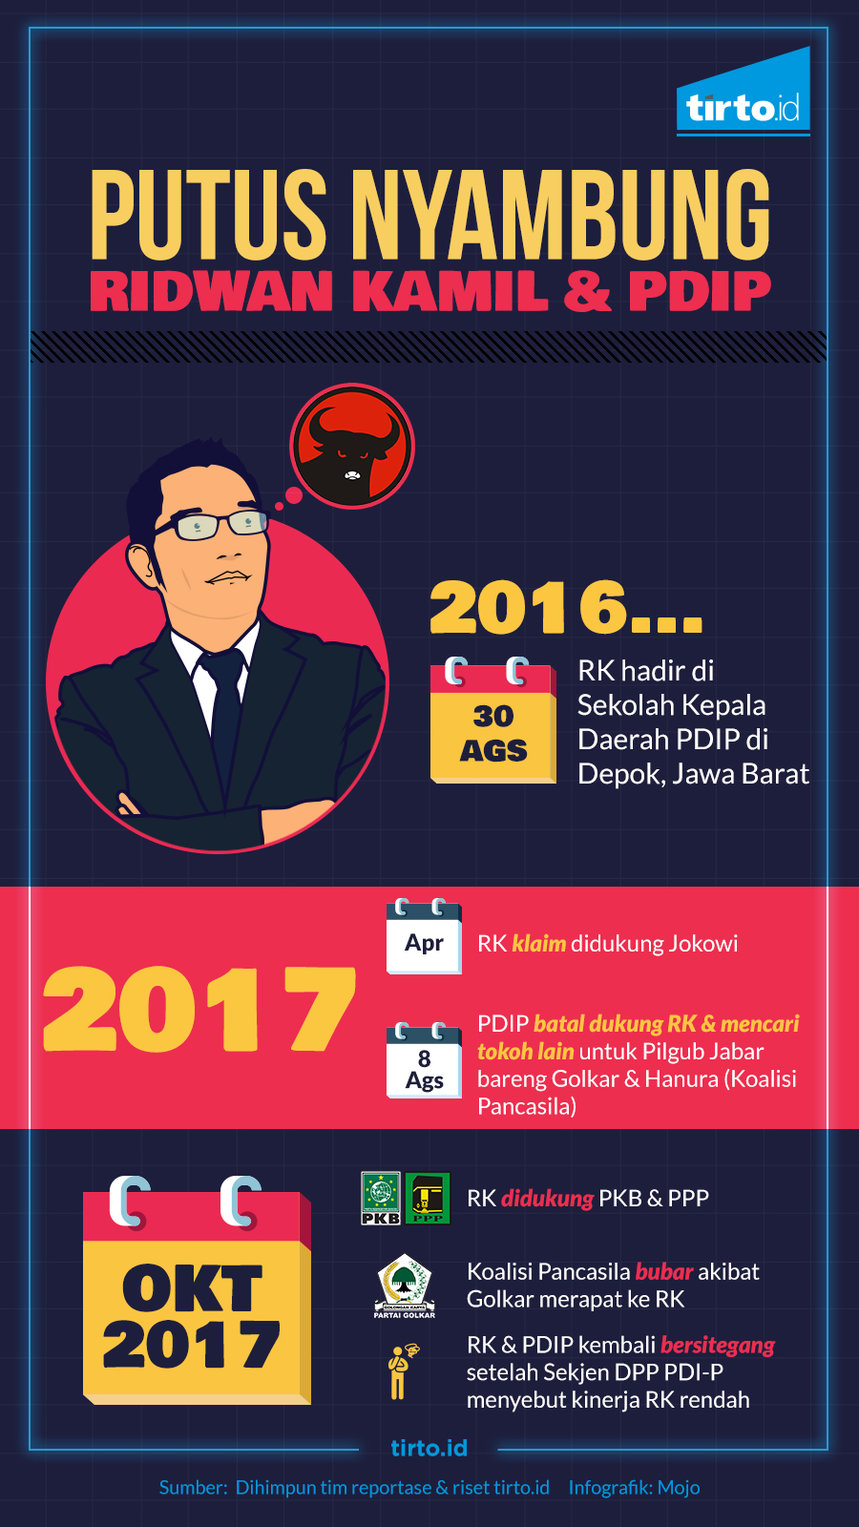 Infografik Jokowi Cari pasangan 